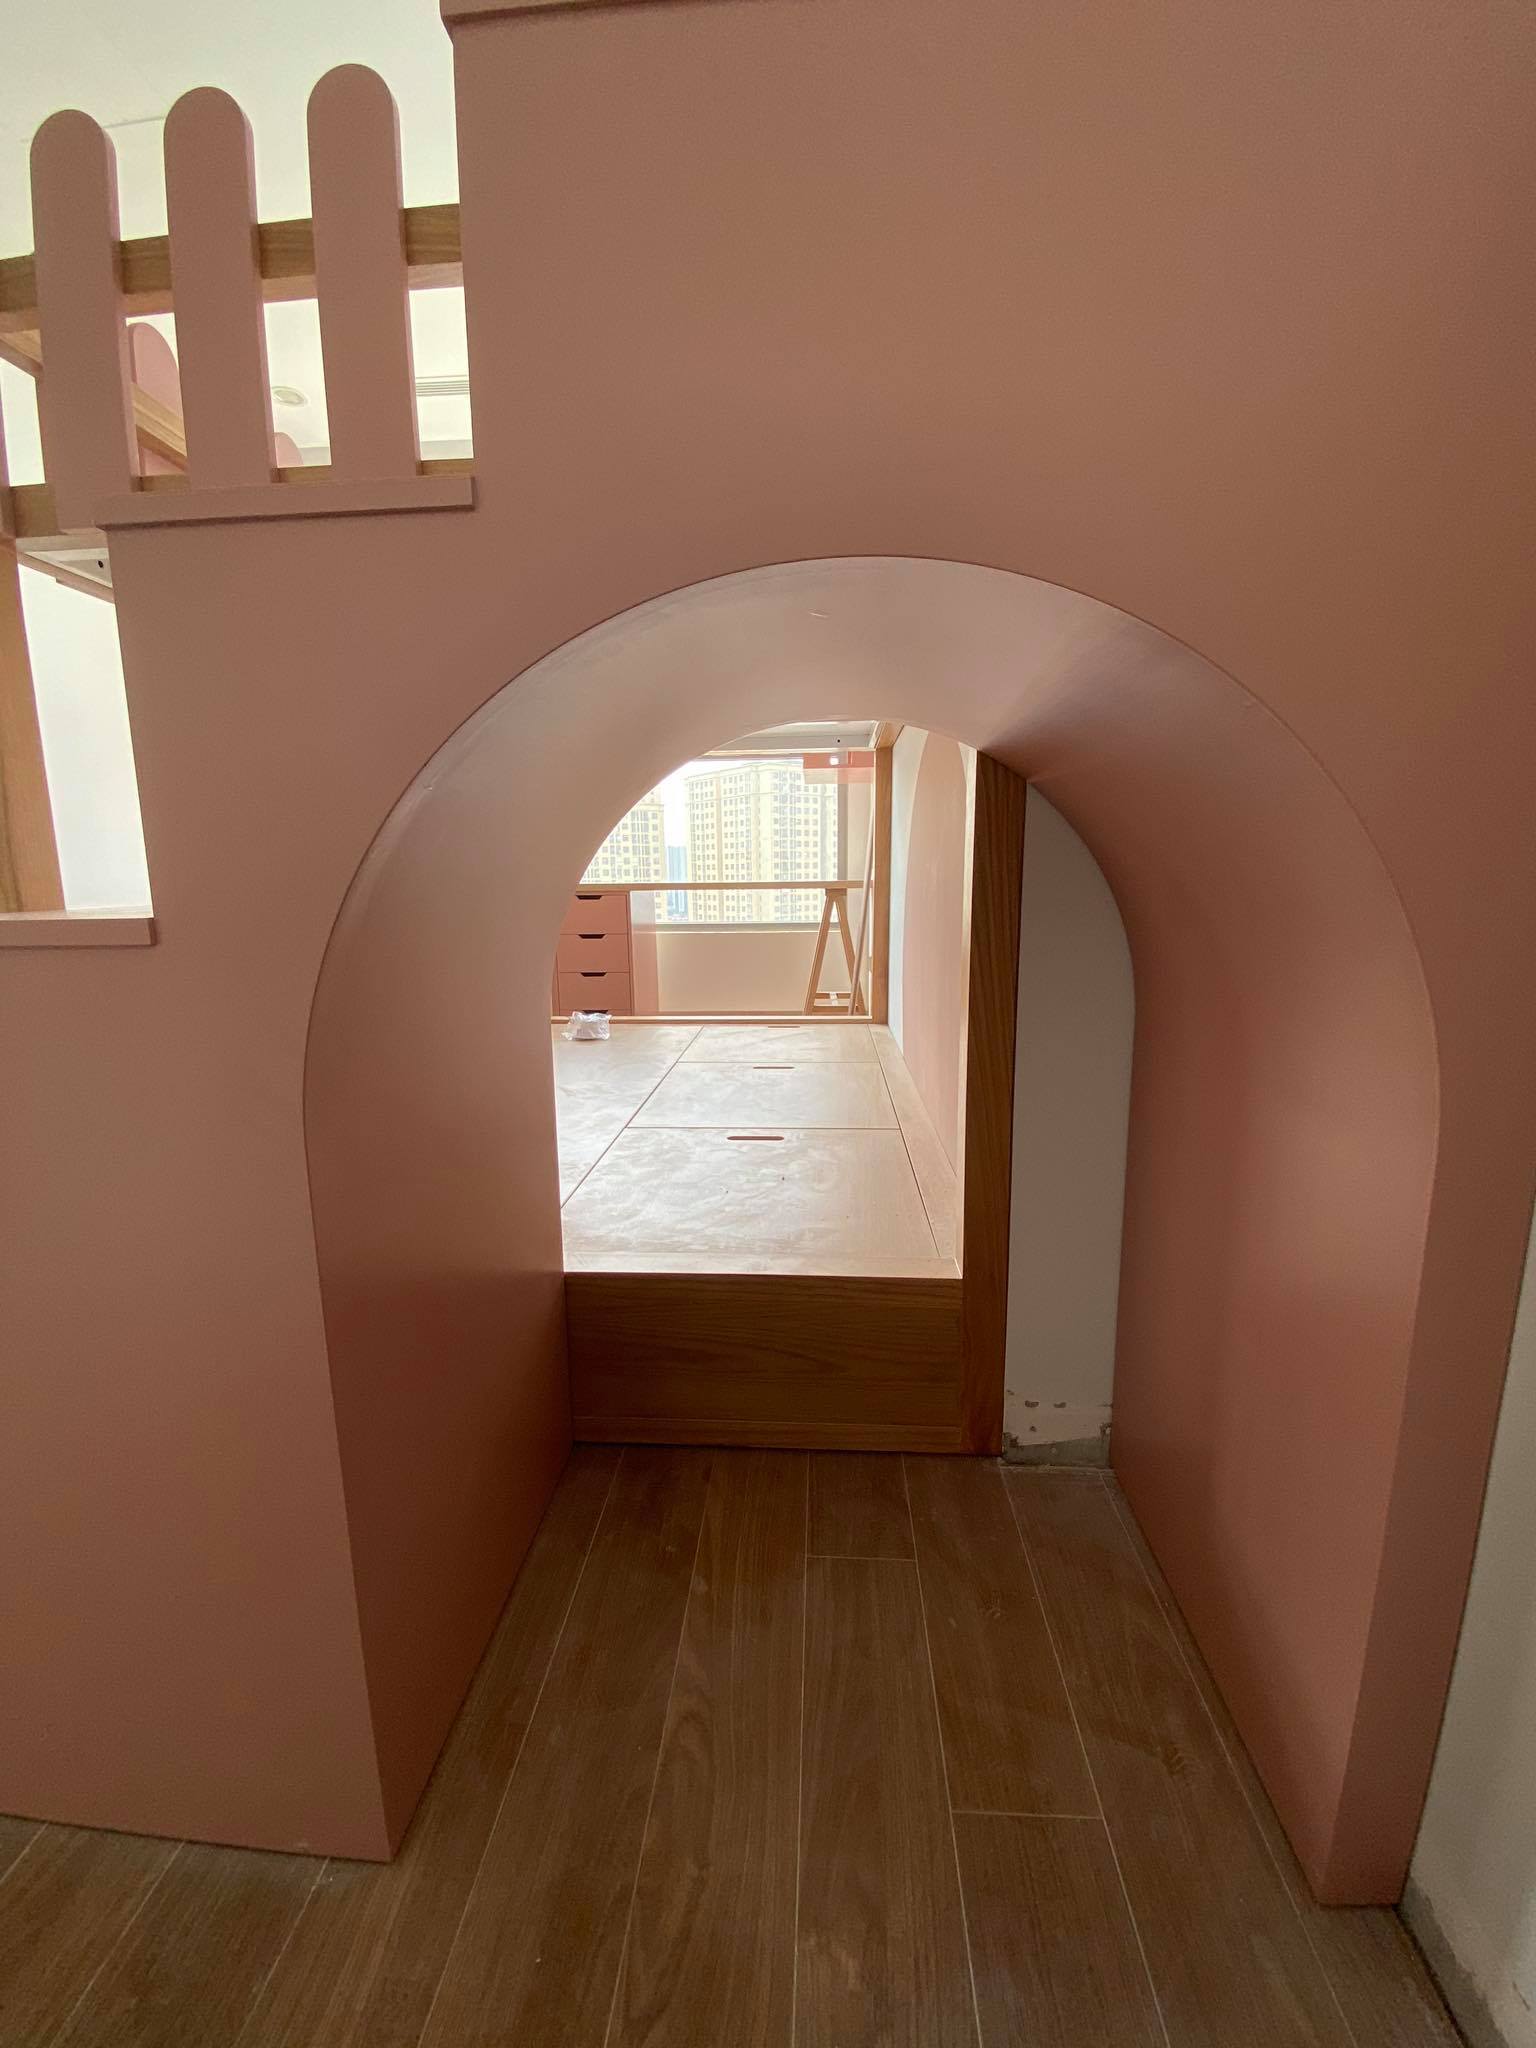 Chút biến tấu cho căn hộ nhỏ, không gian rộng hơn nhờ nội thất thông minh - Ảnh 11.